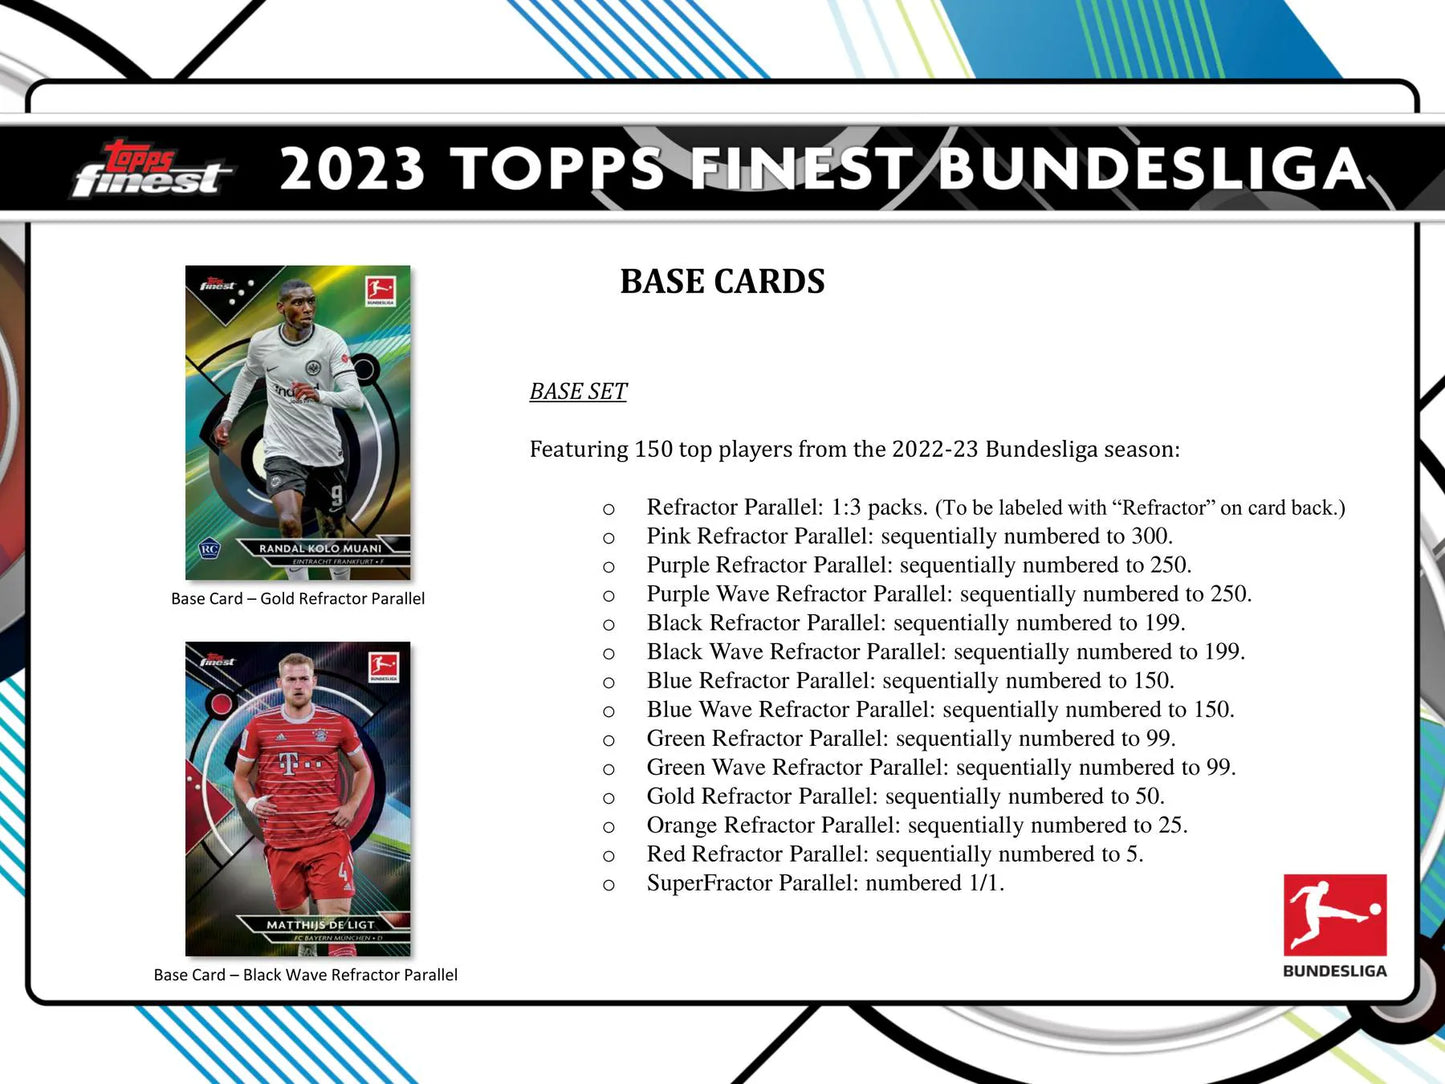 2022/23 Topps Finest Bundesliga Soccer Hobby 8-Box Case